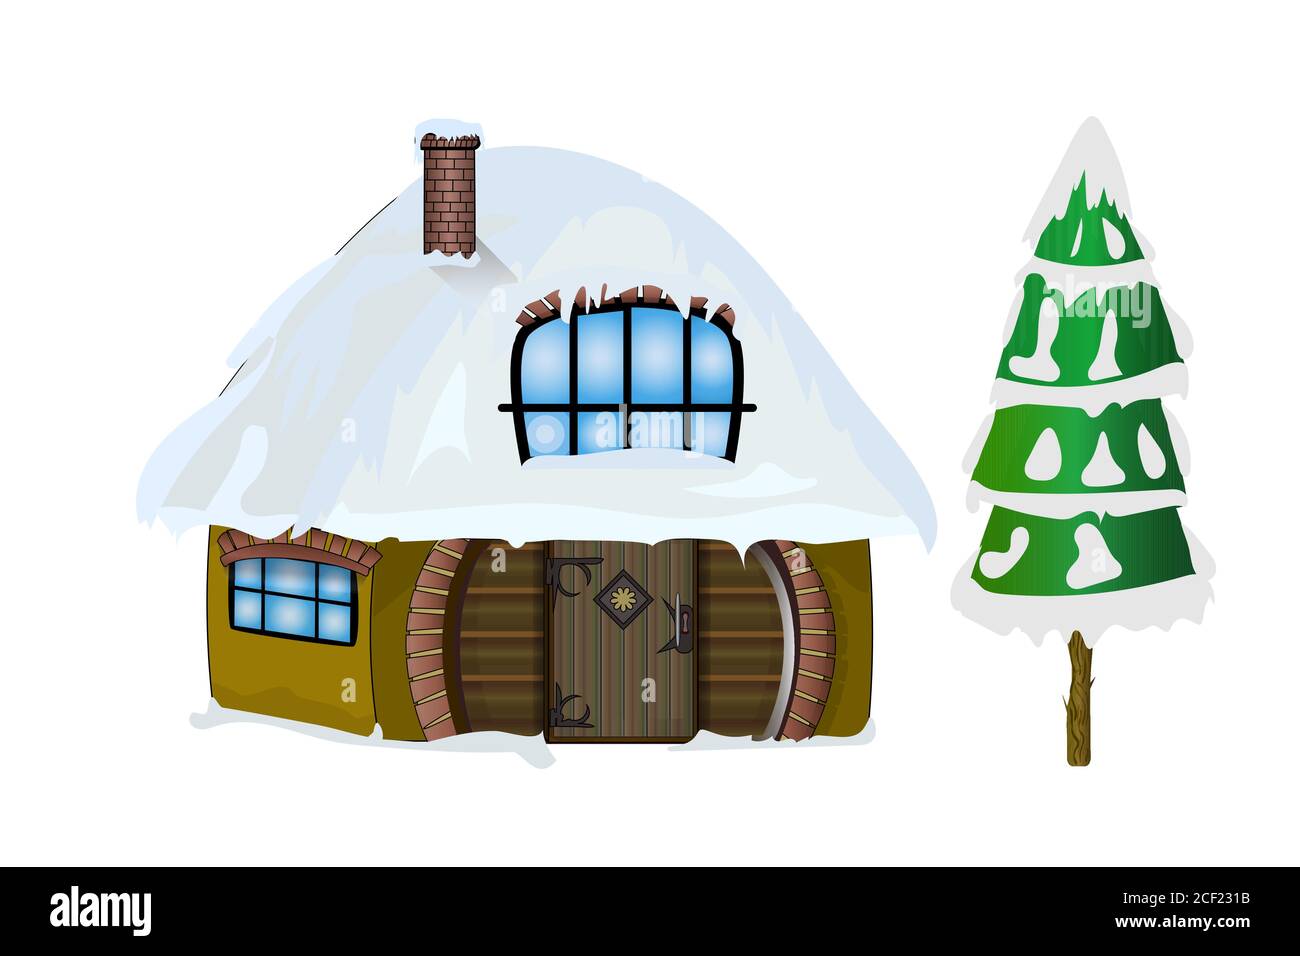 Winterhaus und erste isoliert auf weißem Hintergrund. Weihnachtshaus mit Schnee auf dem Hausdach. Weihnachtsmann Haus mit Schnee bedeckt. Stock-Vektor Stock Vektor